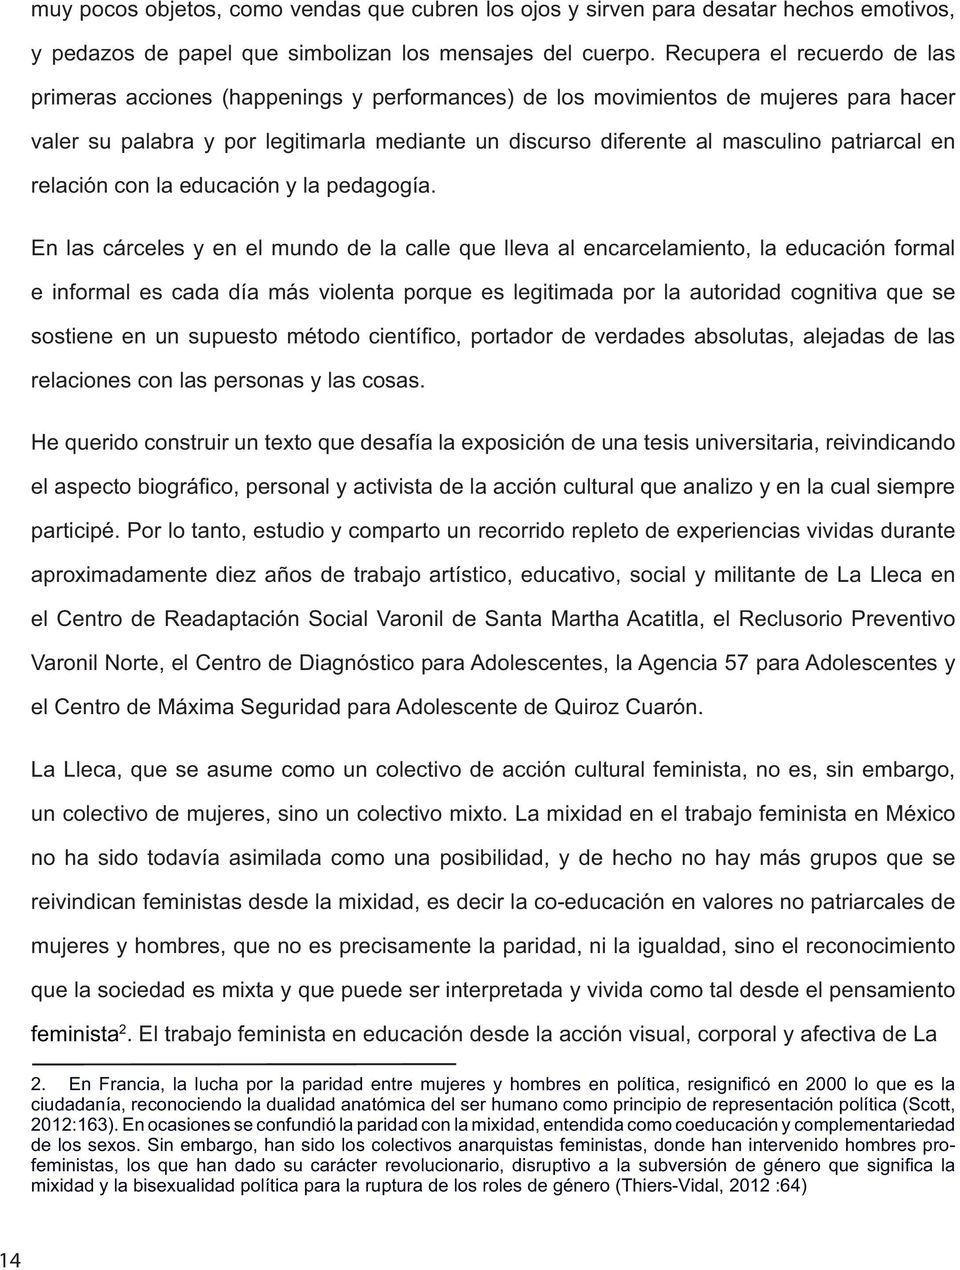 Acatitla, el Reclusorio Preventivo feminista.